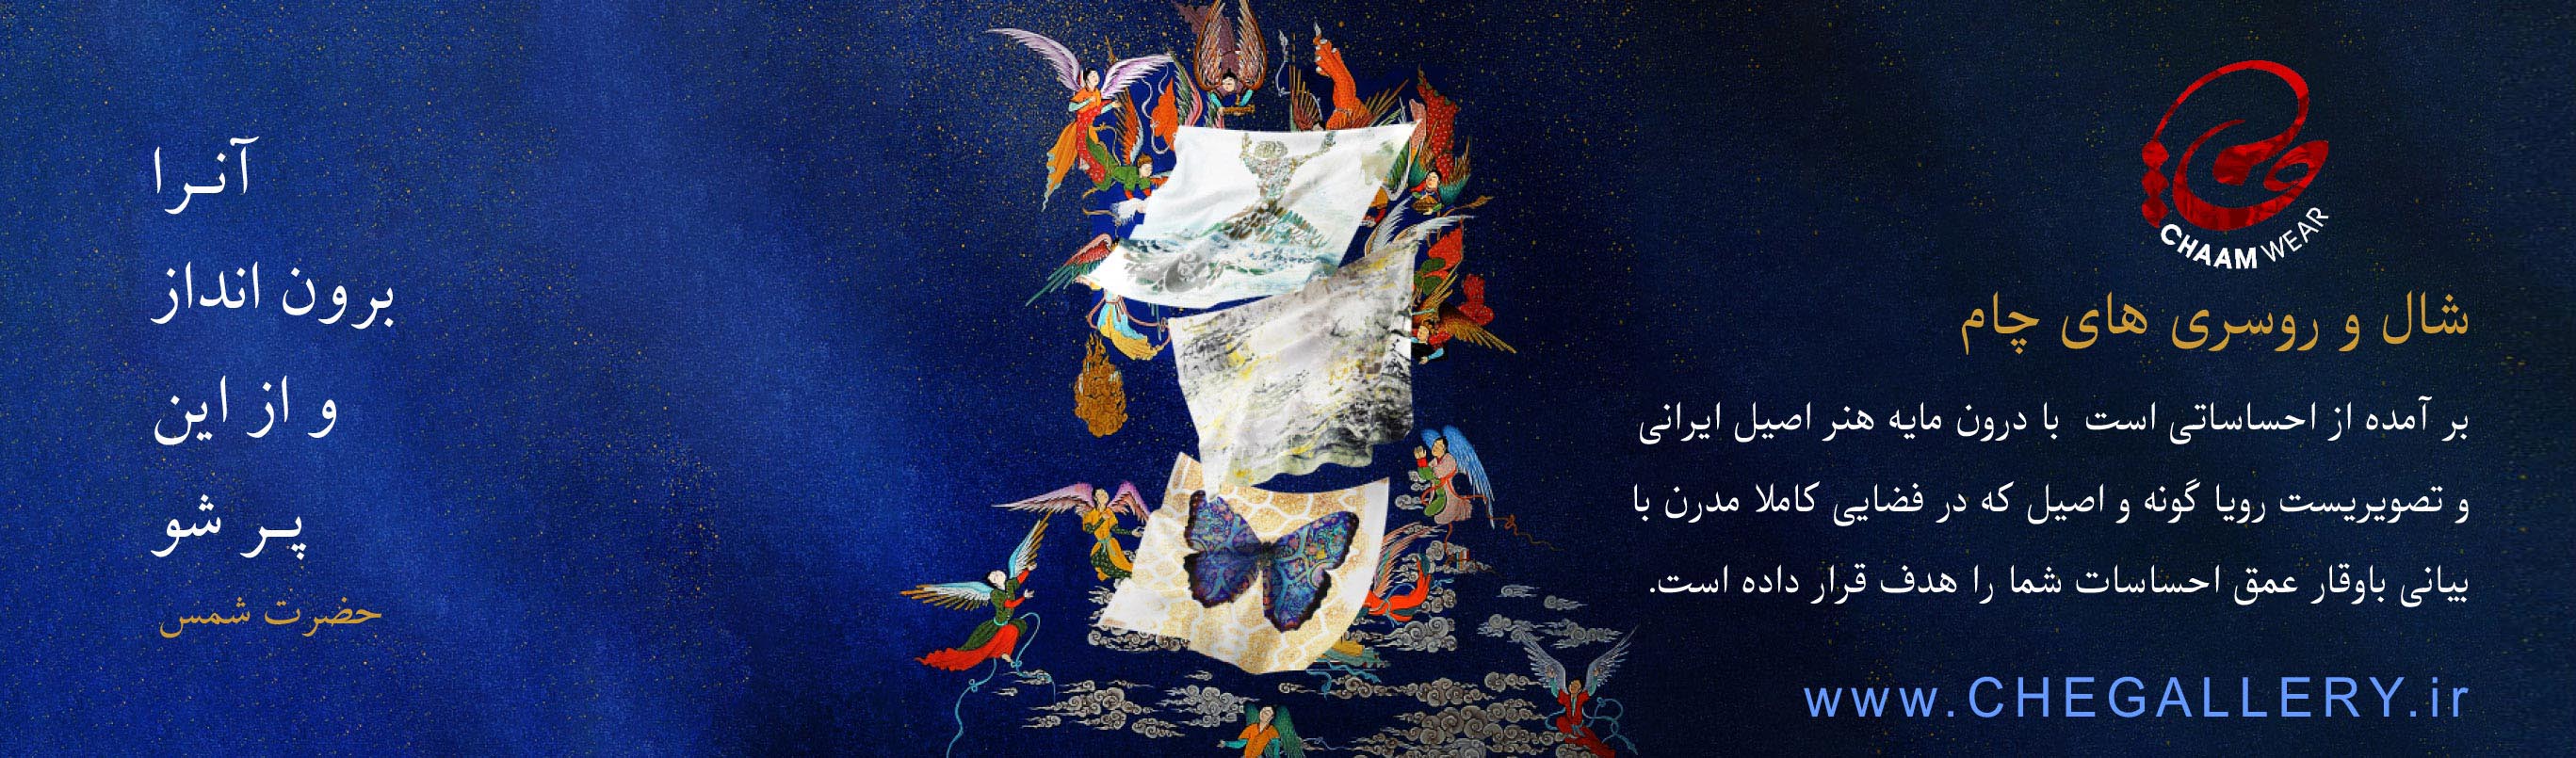 شال و روسری های چام بر آمده از احساساتی است  با درون مایه هنر اصیل ایرانی و تصویریست رویا گونه و اصیل که در فضایی کاملا مدرن با  بیانی باوقار عمق احساسات شما را هدف قرار داده است.